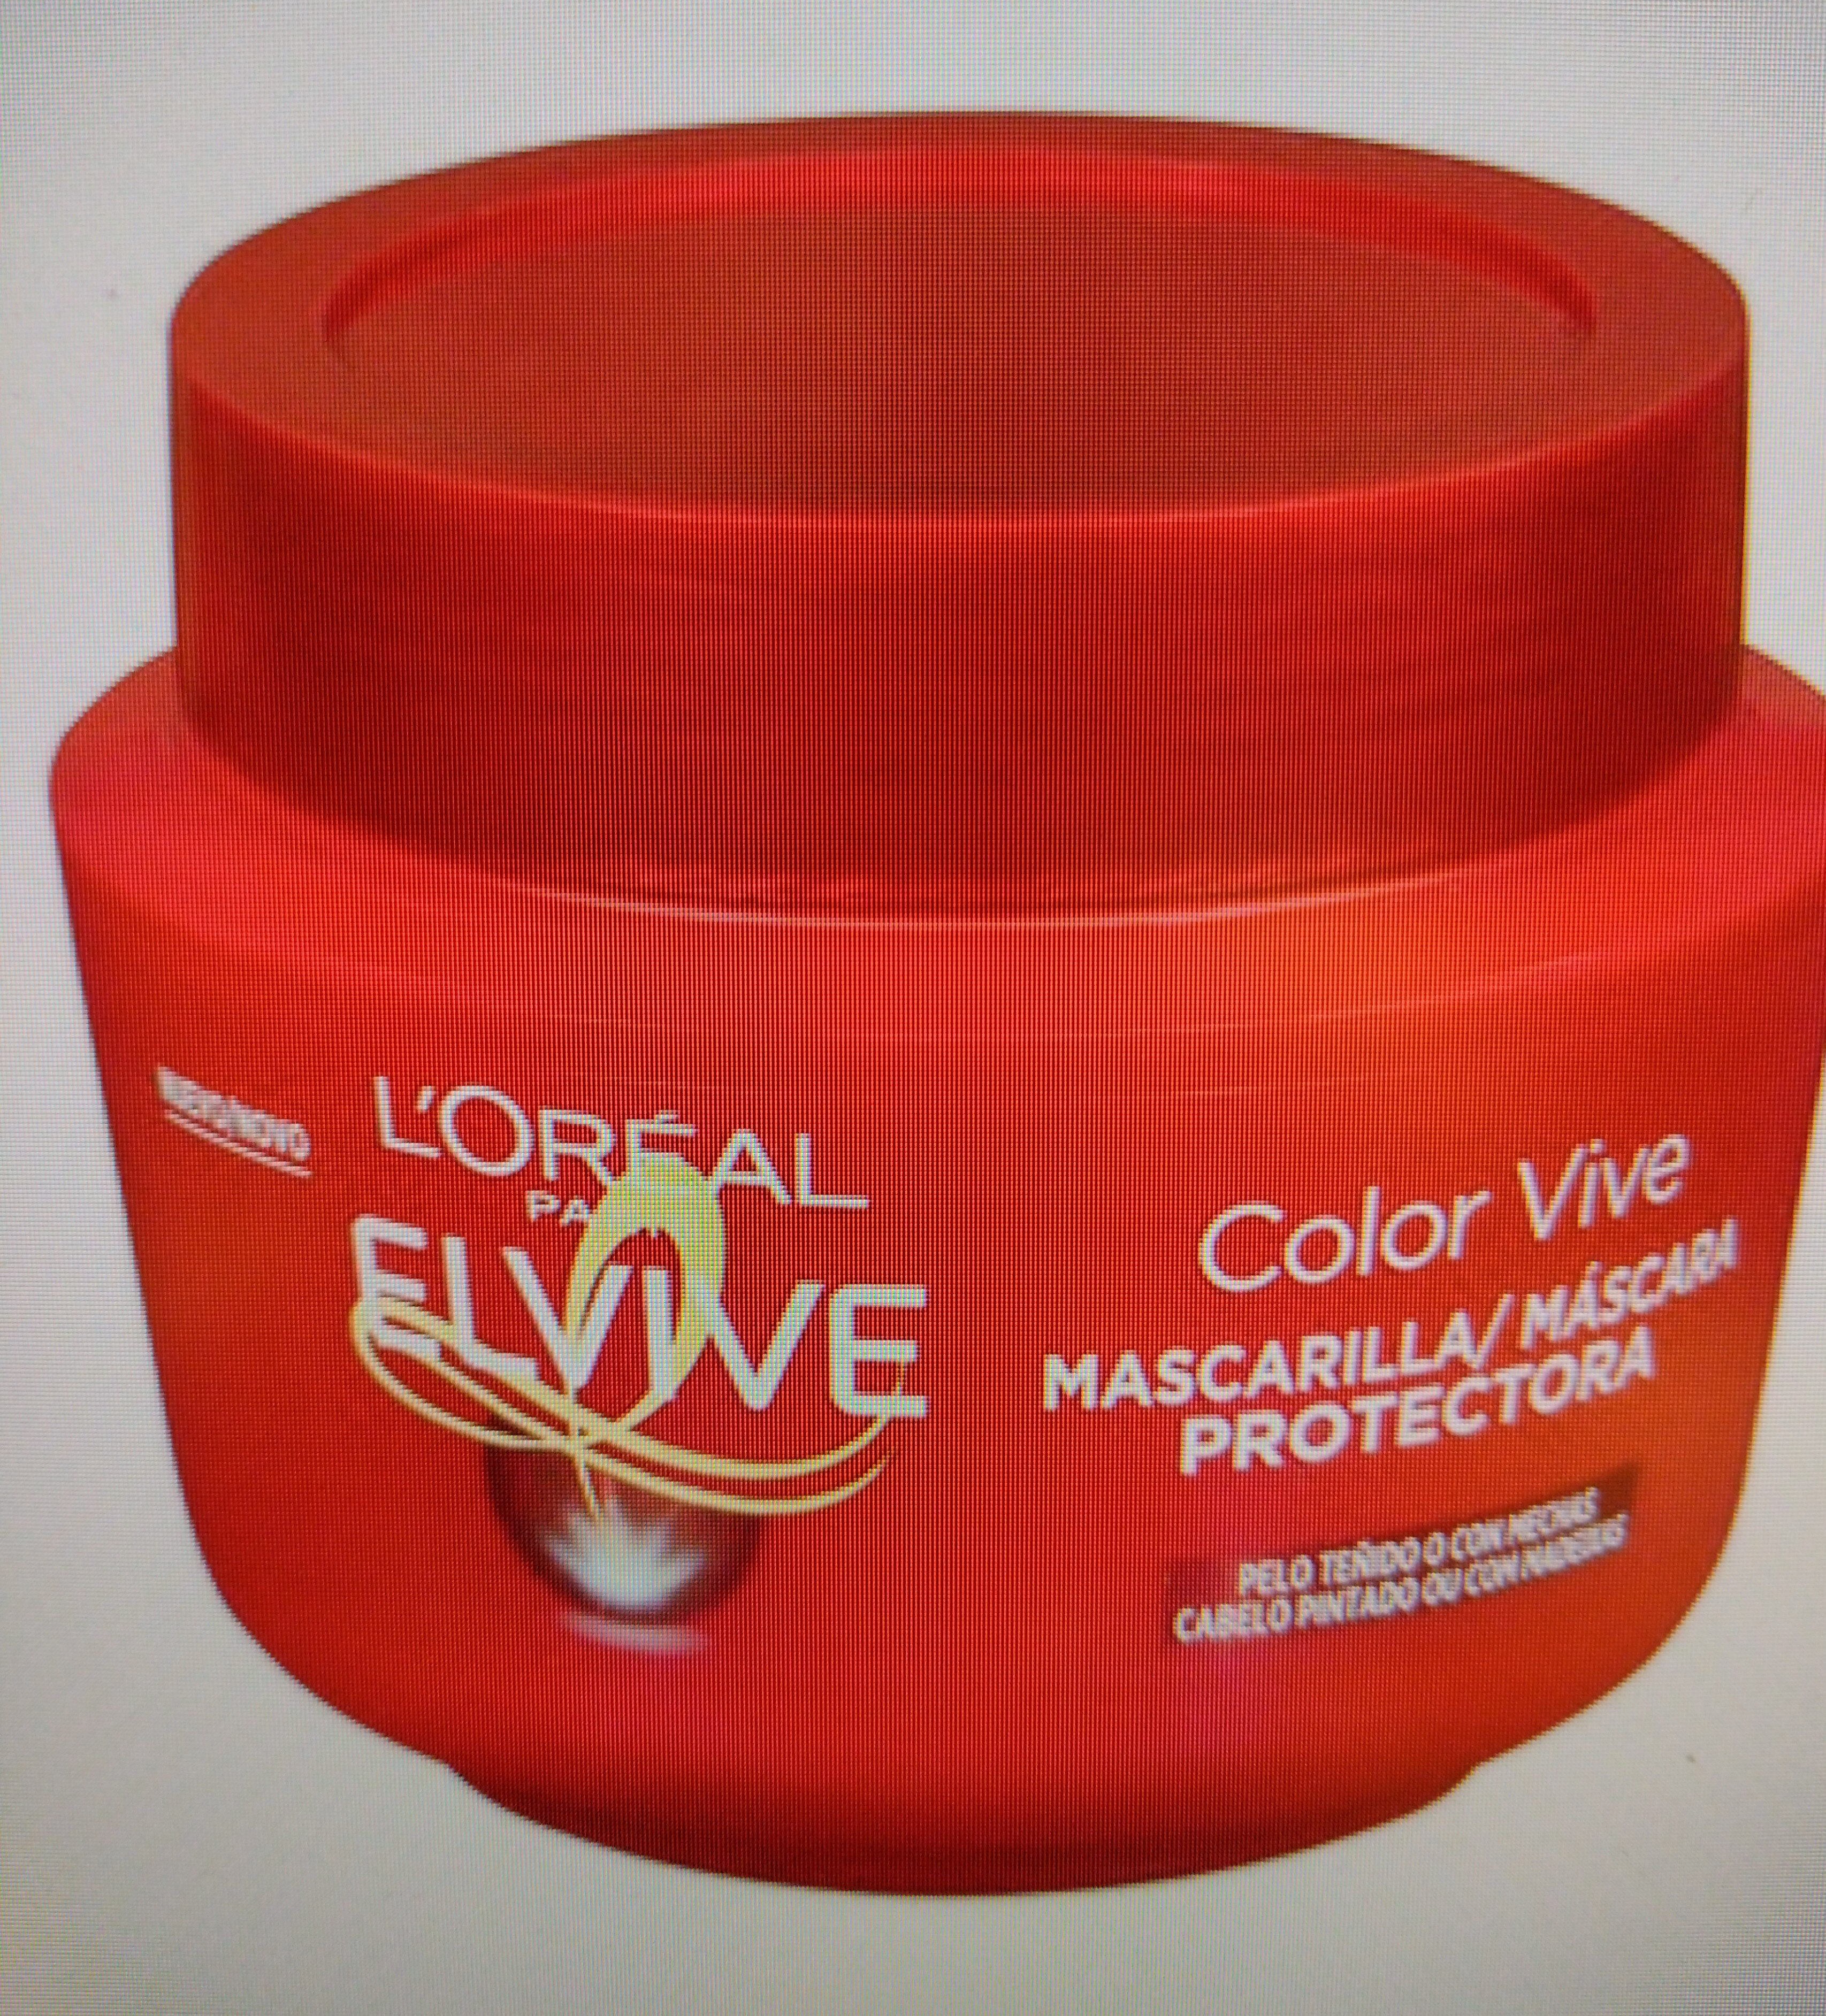 Mascarilla protectora Color Vive Elvive - Product - es